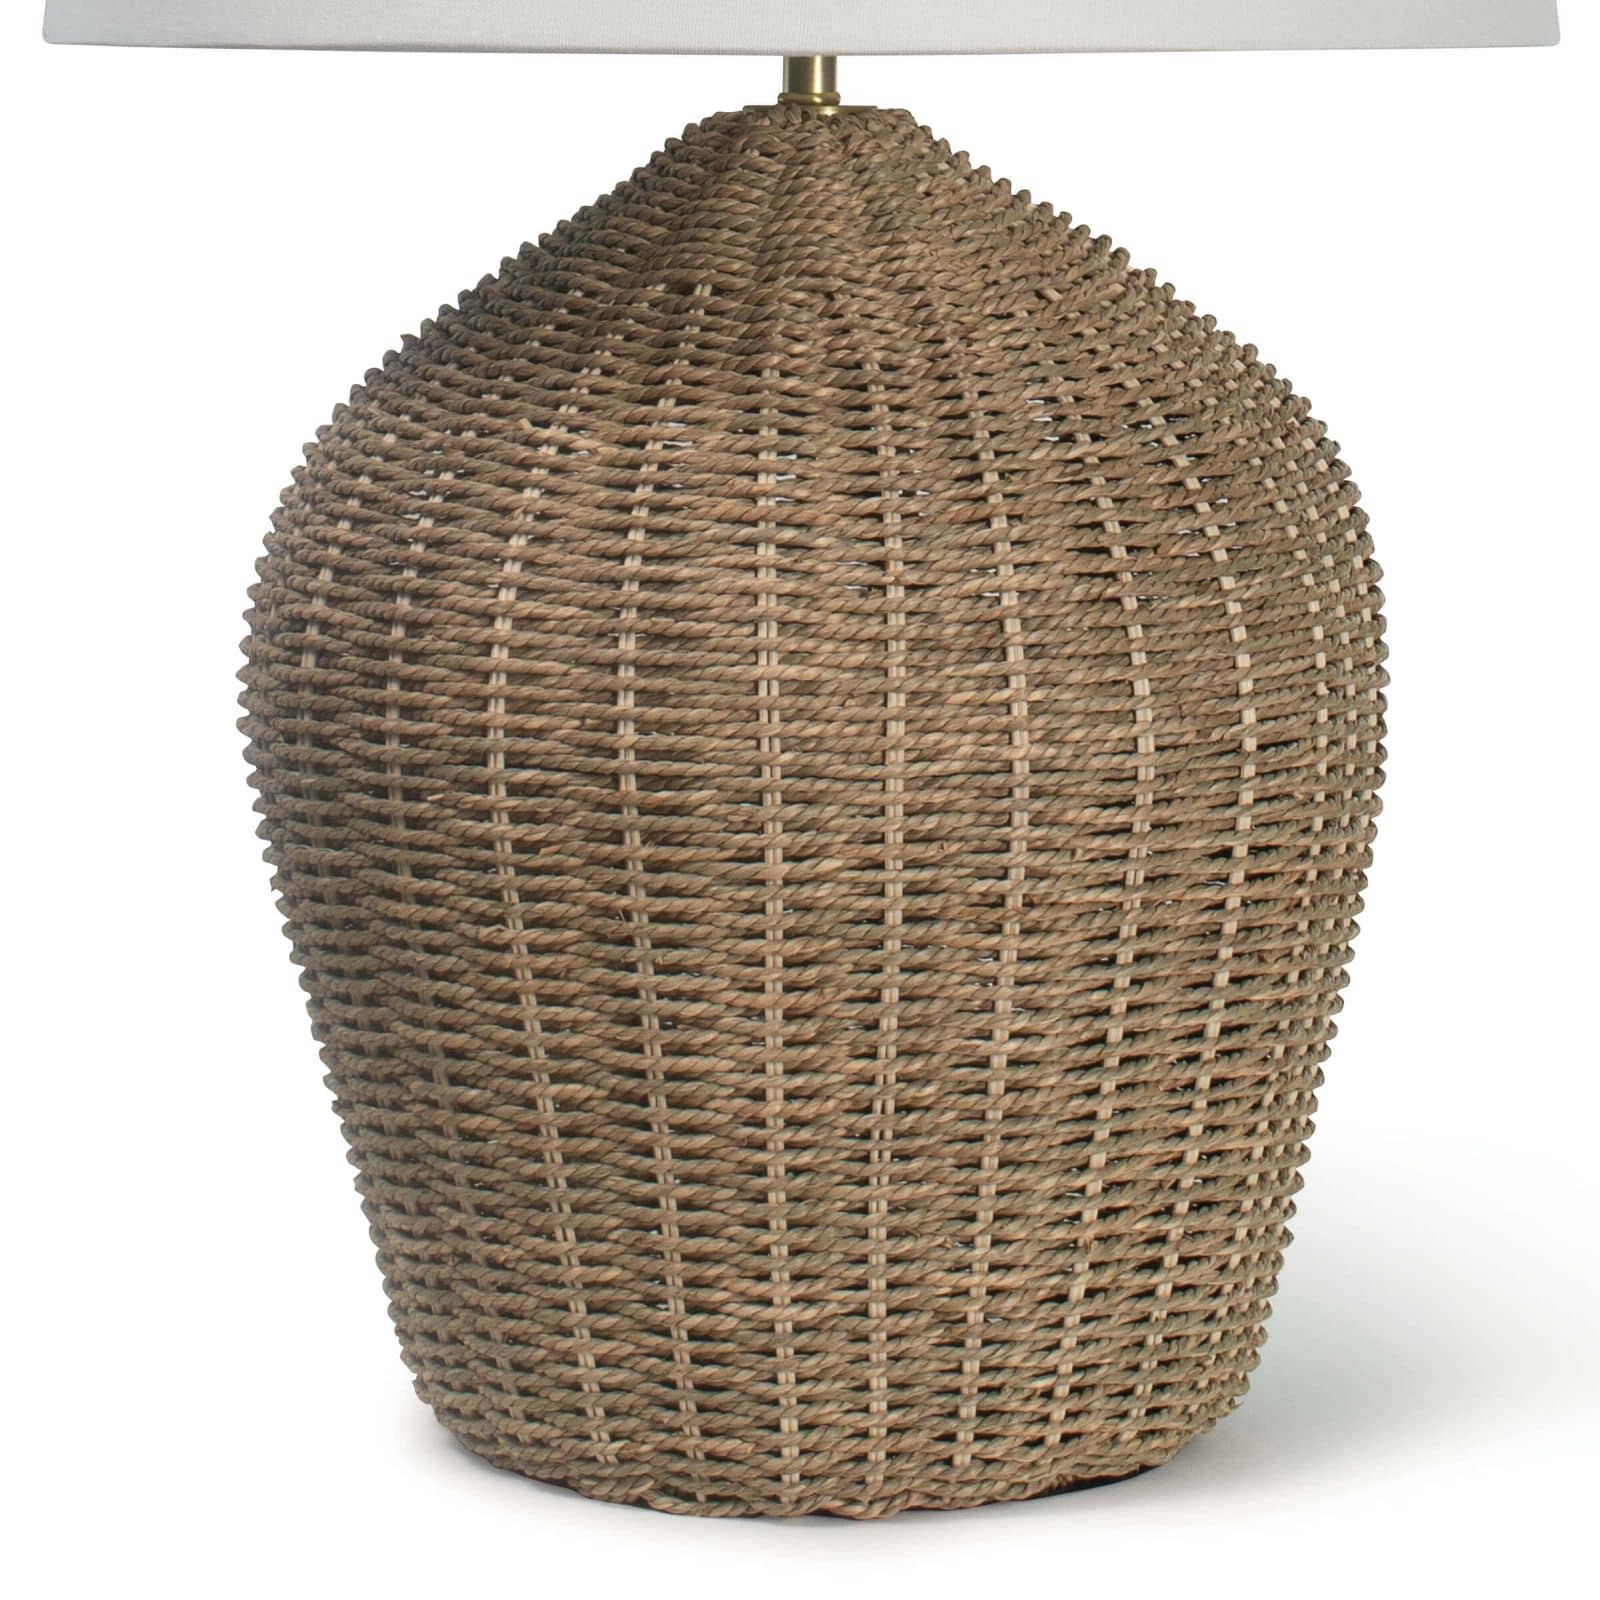 Regina Andrew Georgian Table Lamp (Natural)